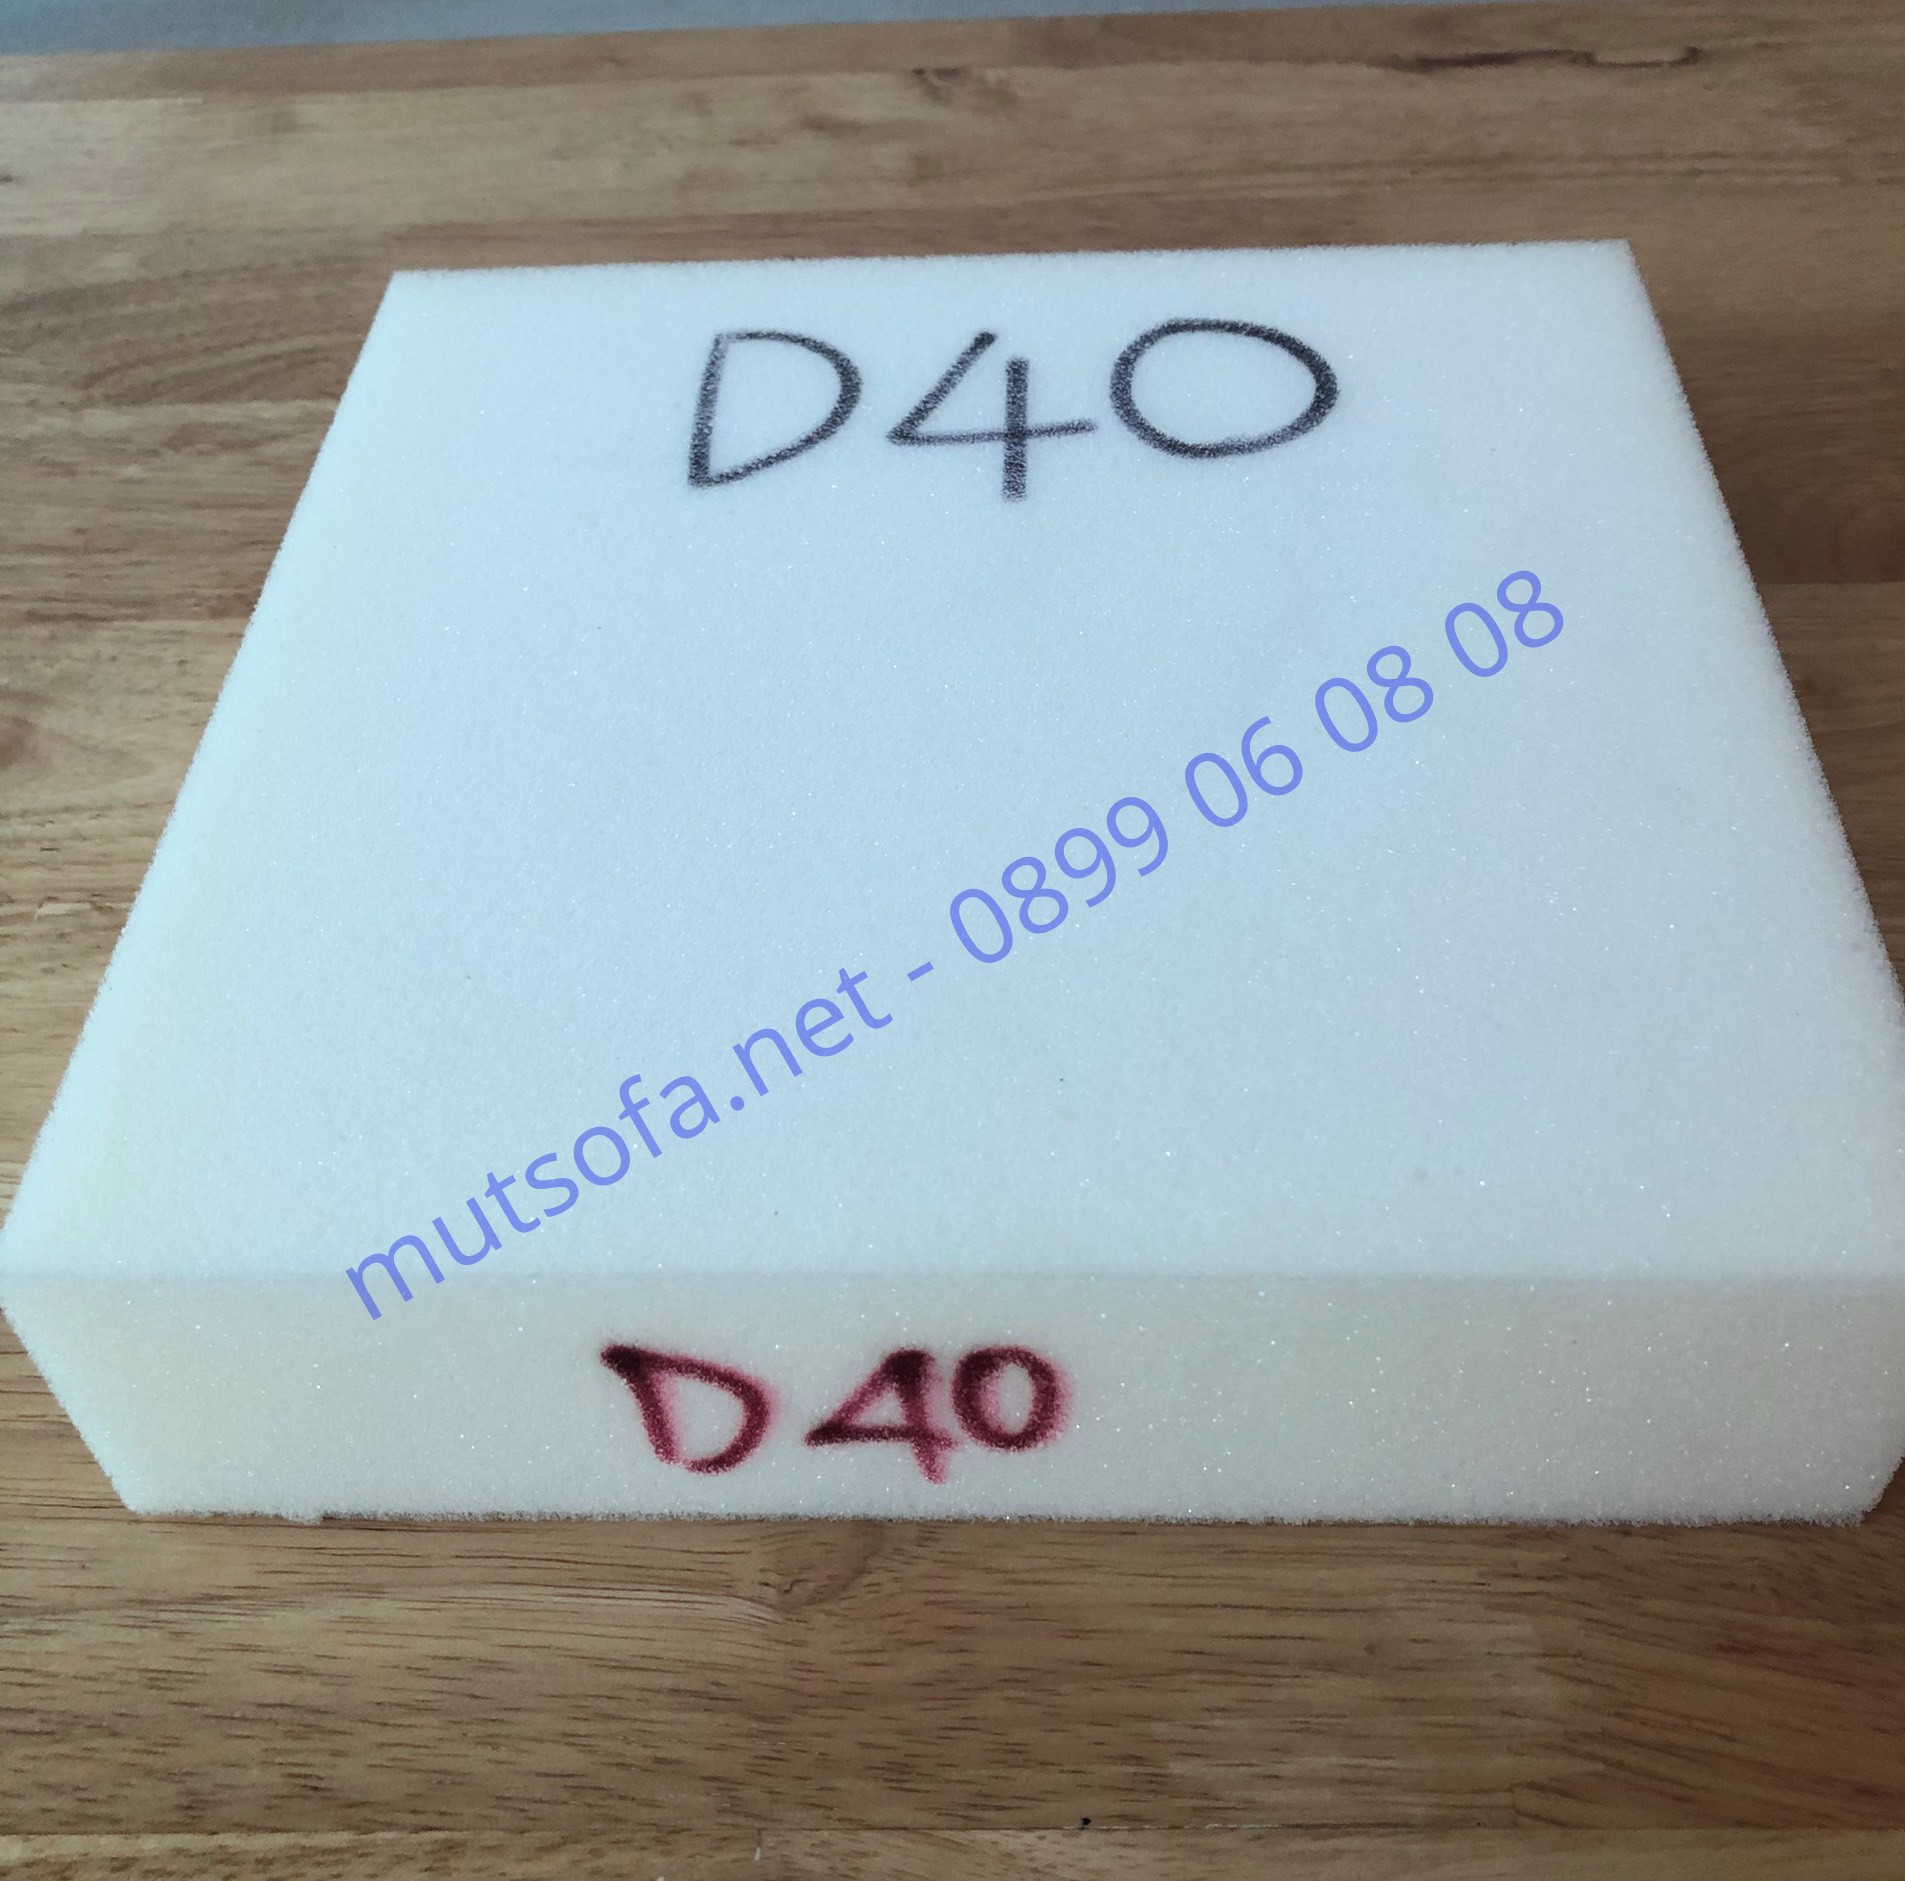 mut-xop-d40 (3).jpg